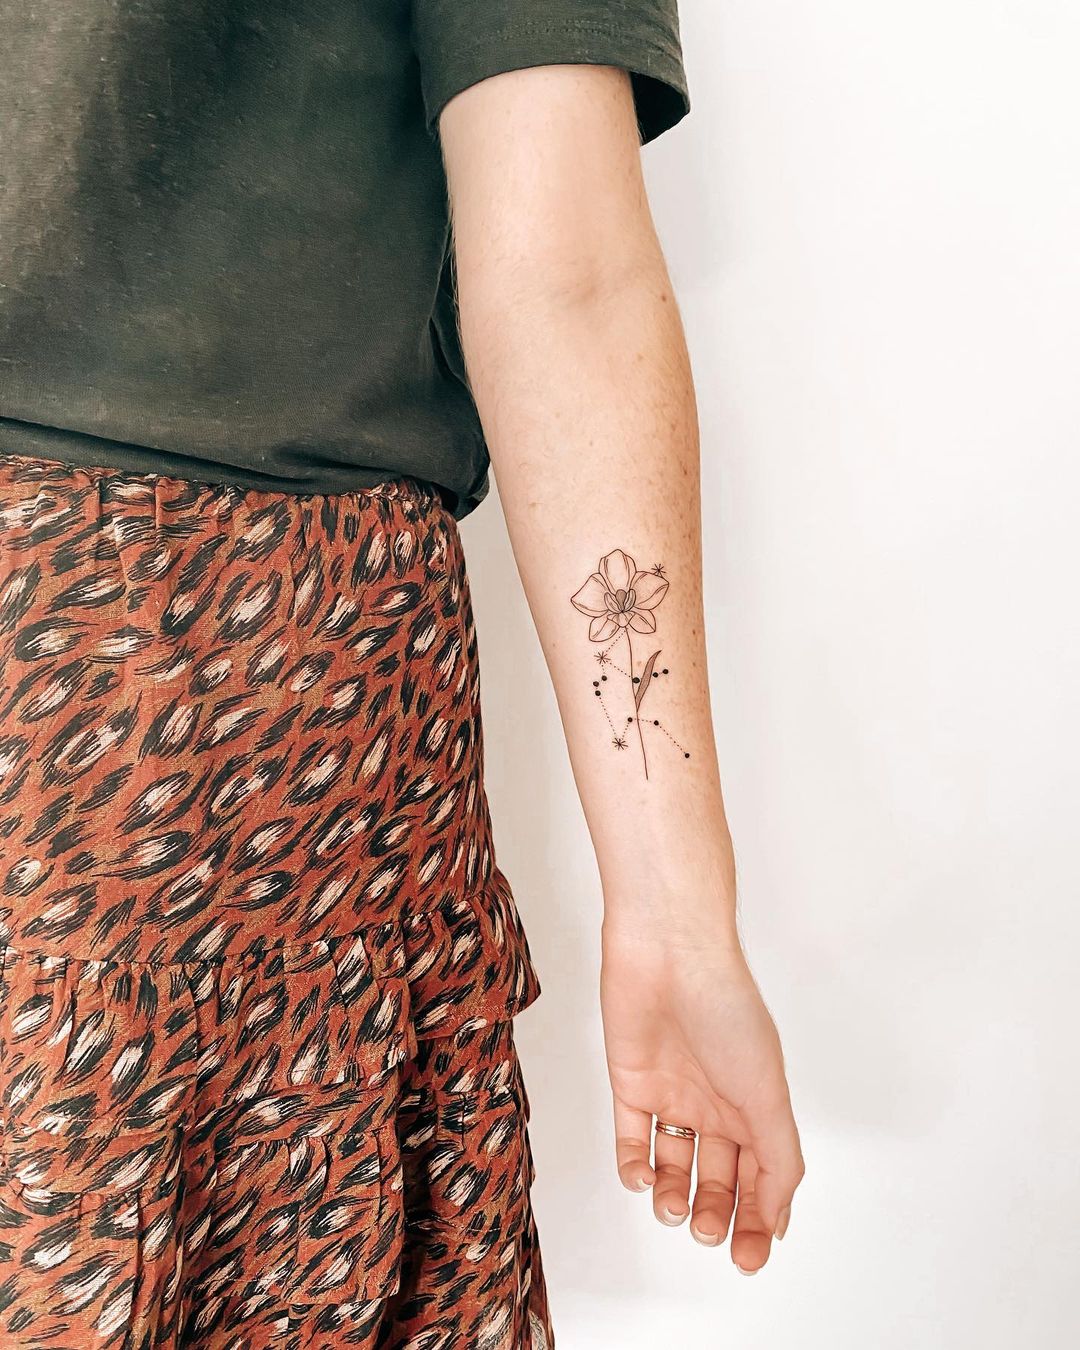 Tatuaje de Orquídea en el brazo con Tinta Negra.